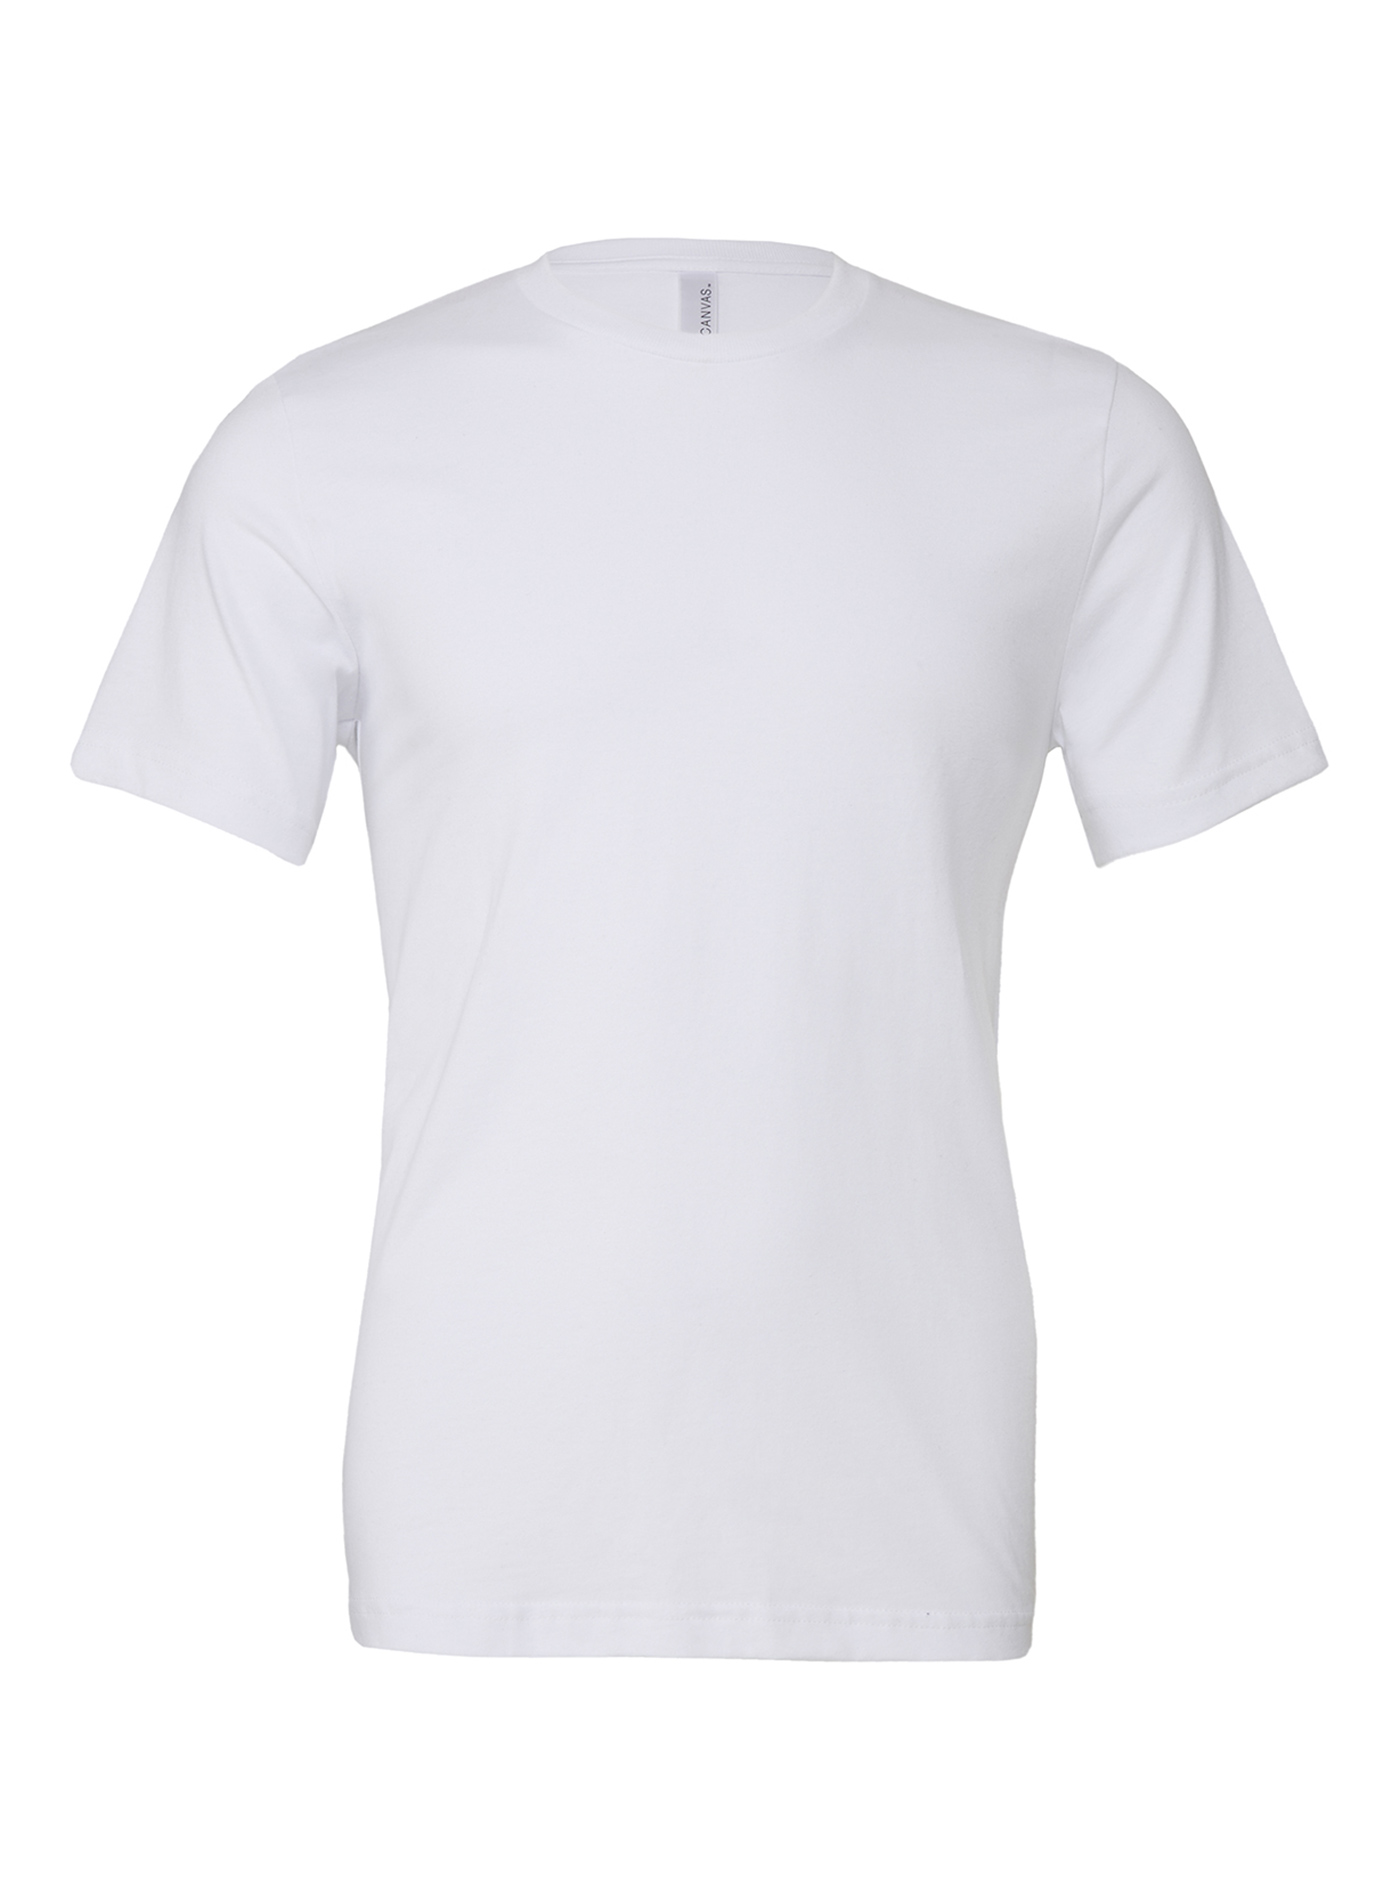 Unisex tričko Bella + Canvas Jersey - Bílá XS